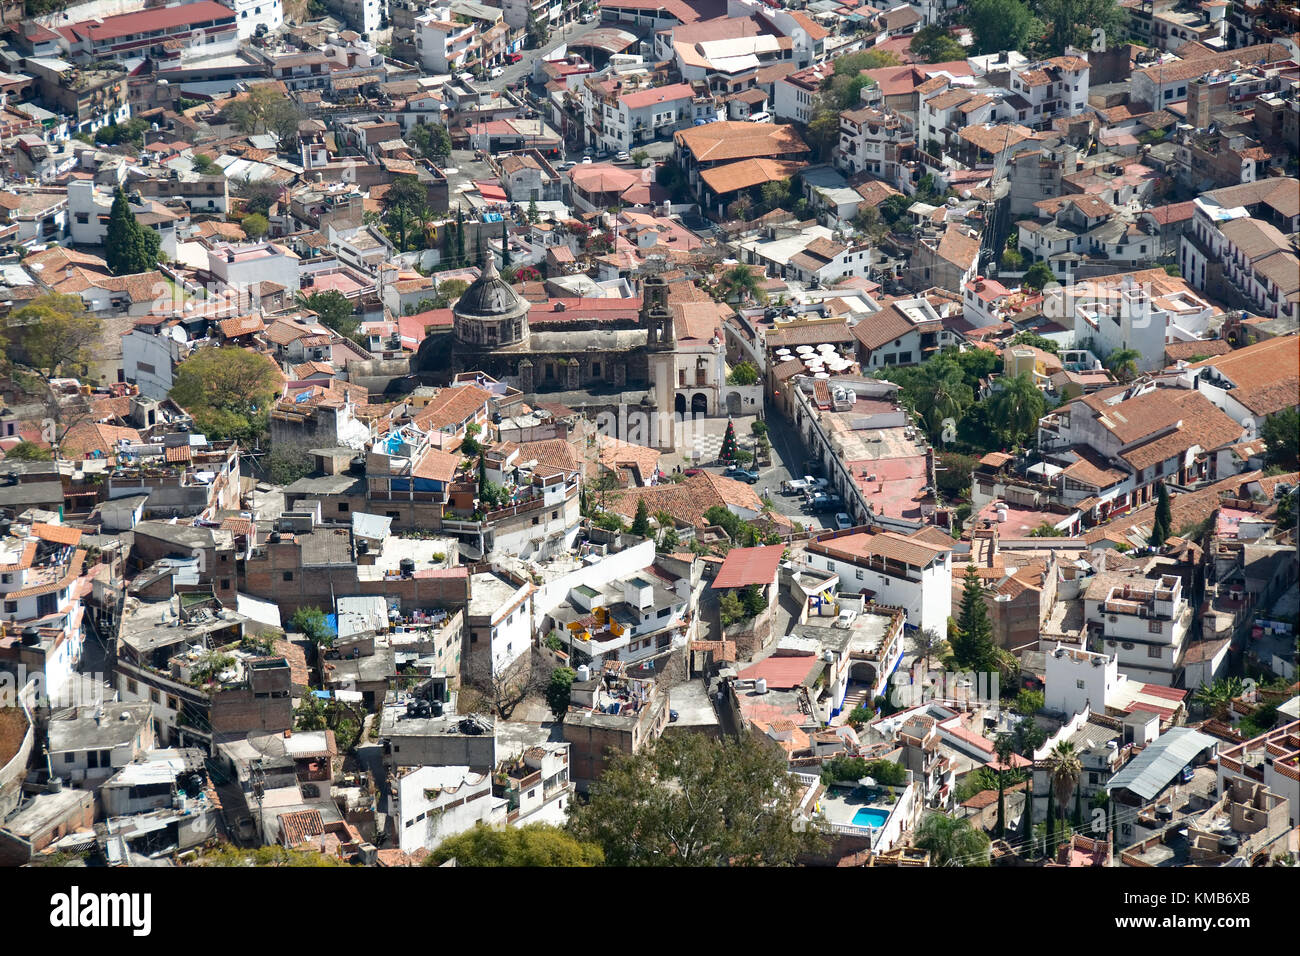 Vue panoramique de la ville, y compris le centre historique. taxco, Guerrero, Mexique. Banque D'Images